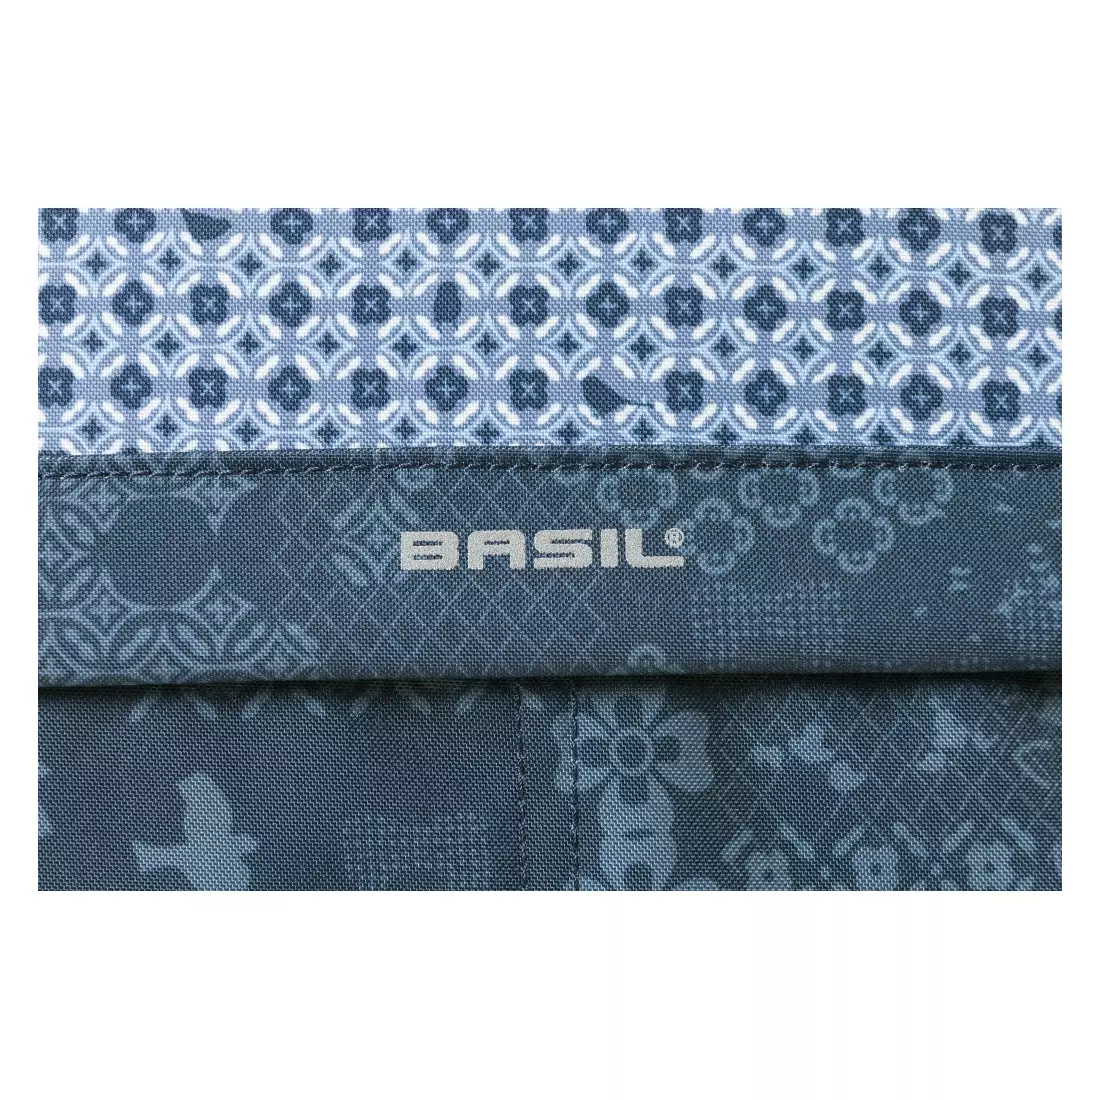 BASIL táska / táska a csomagtartóhoz boheme carry all 18L indigo blue B-18007